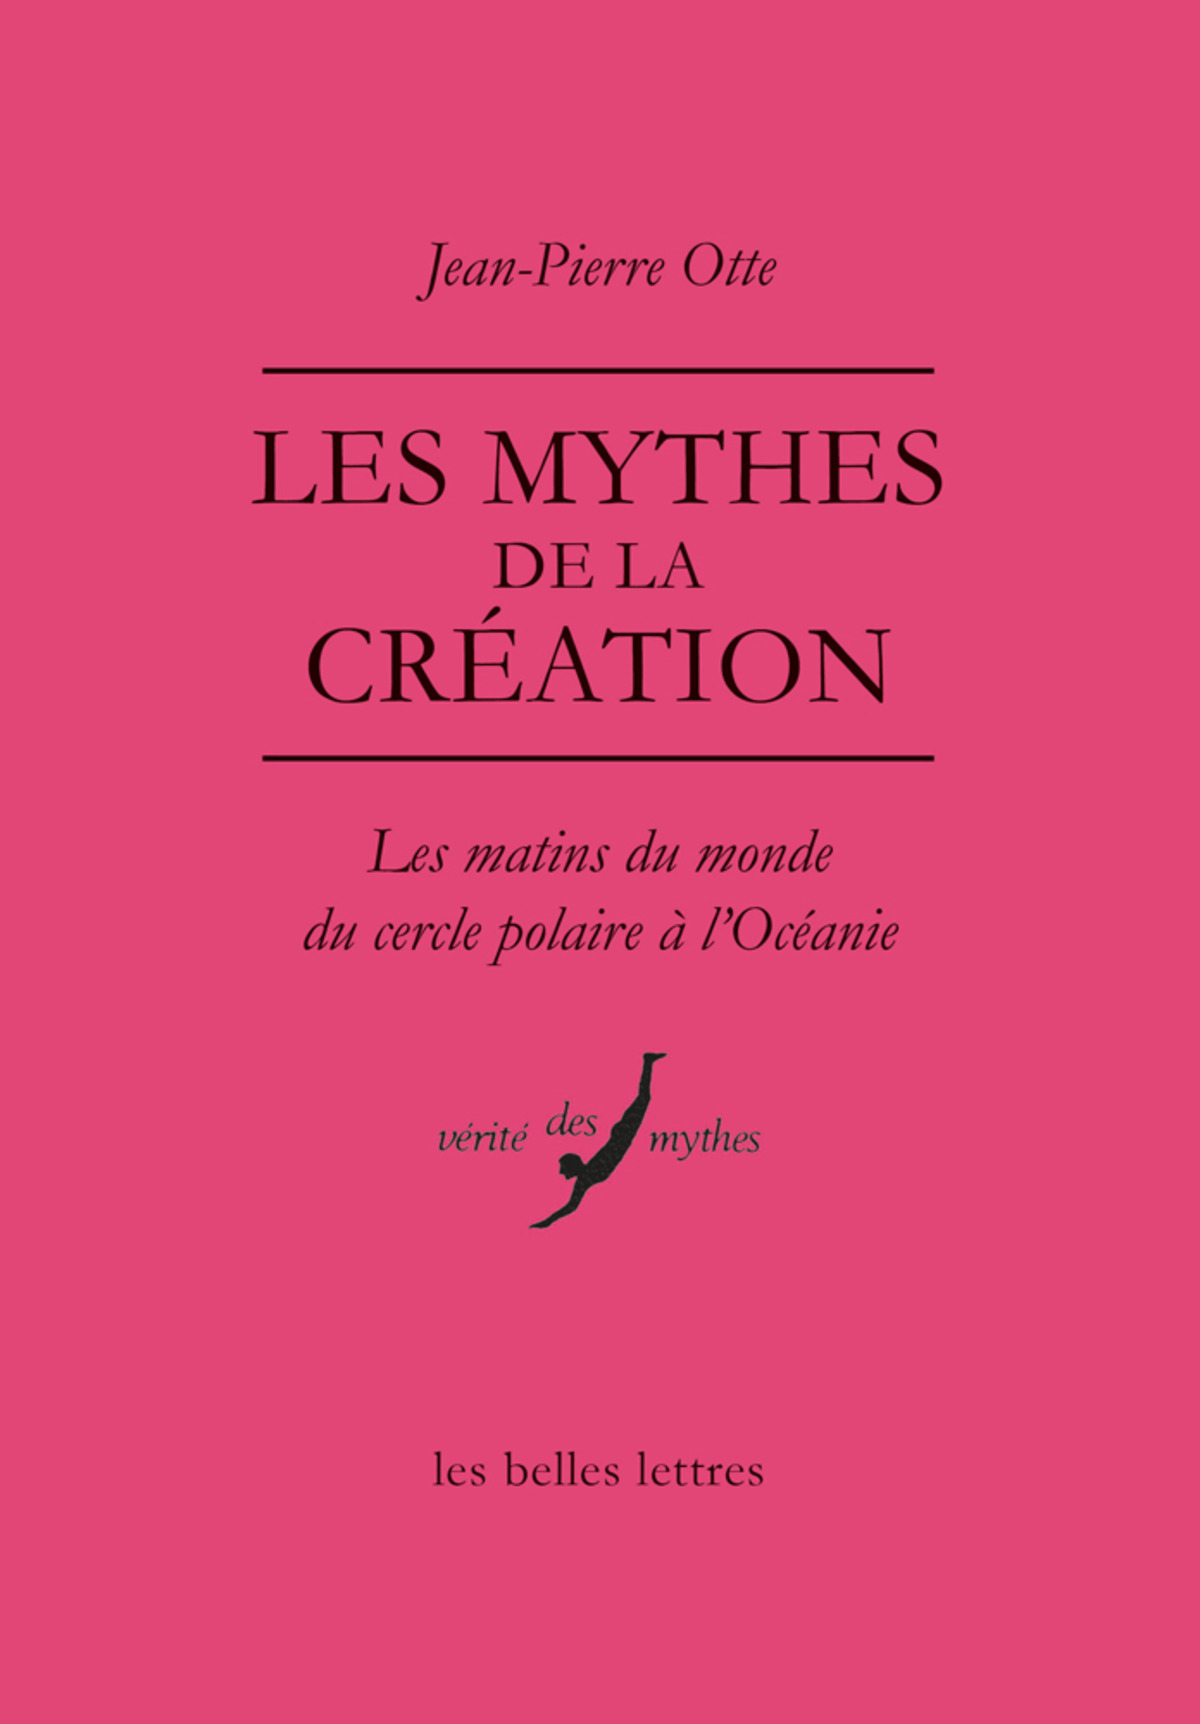 Les Mythes de la création